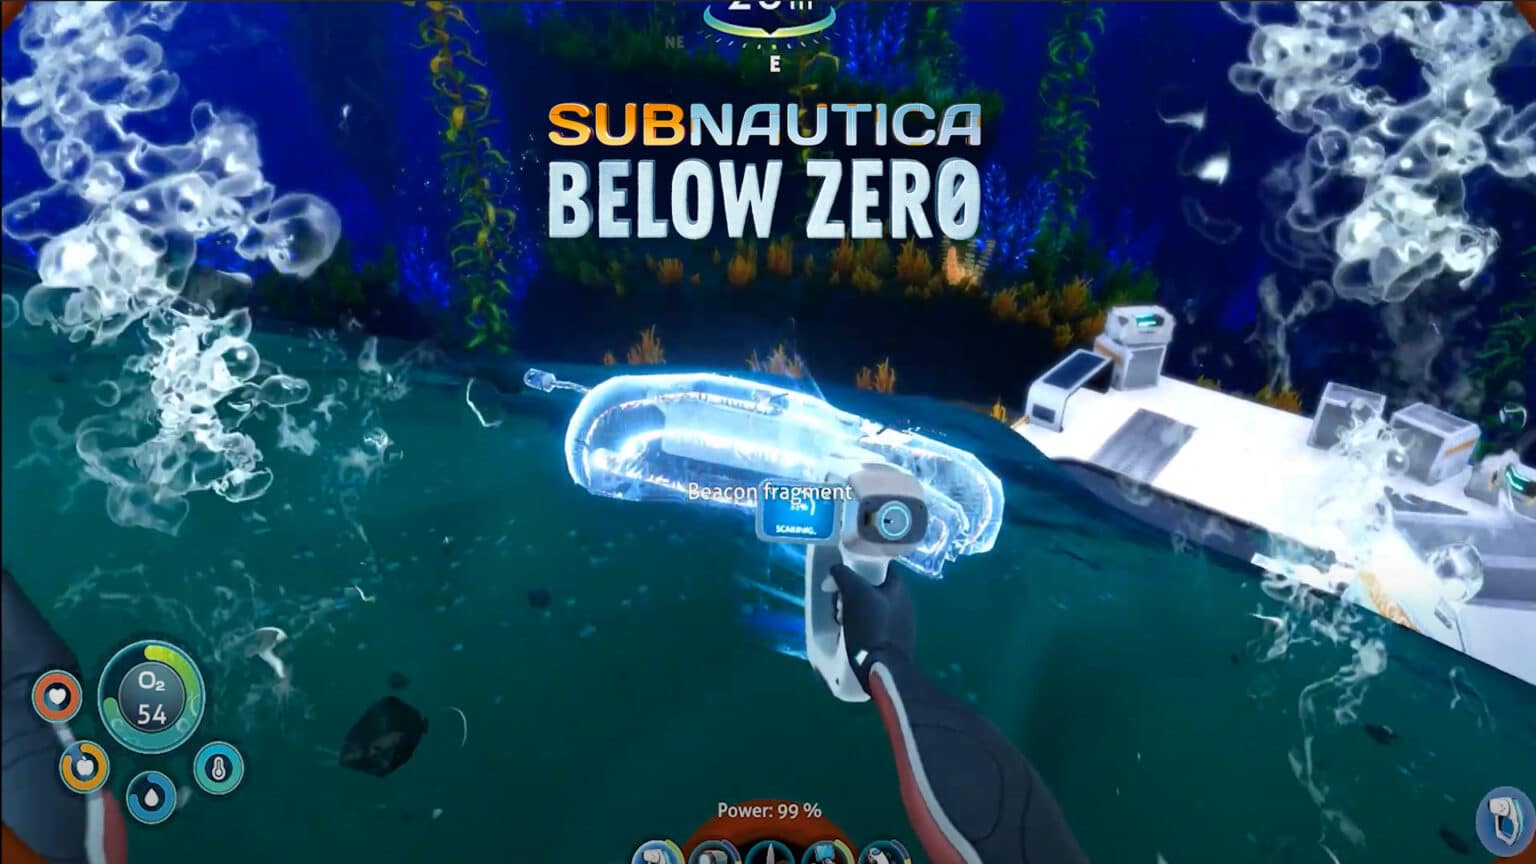 subnautica below zero ps4 download size